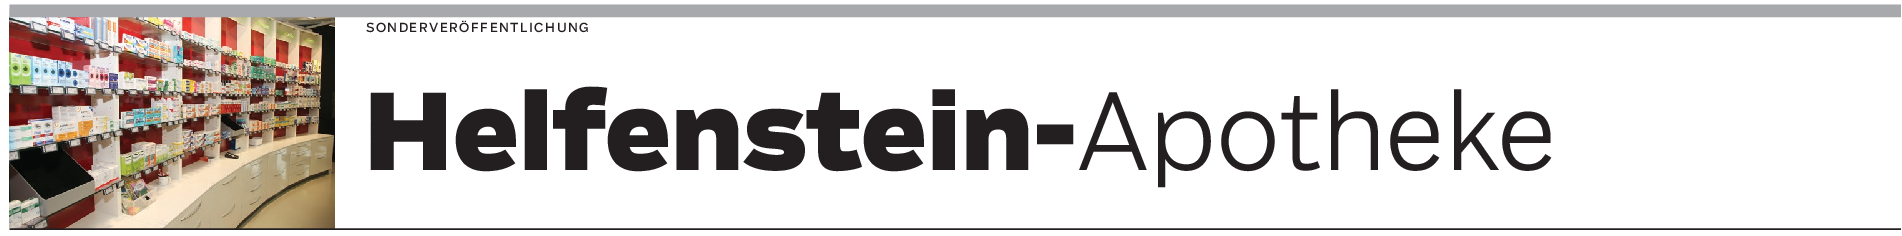 Helfenstein-Apotheke in Geislingen: Immer nahe beim Kunden